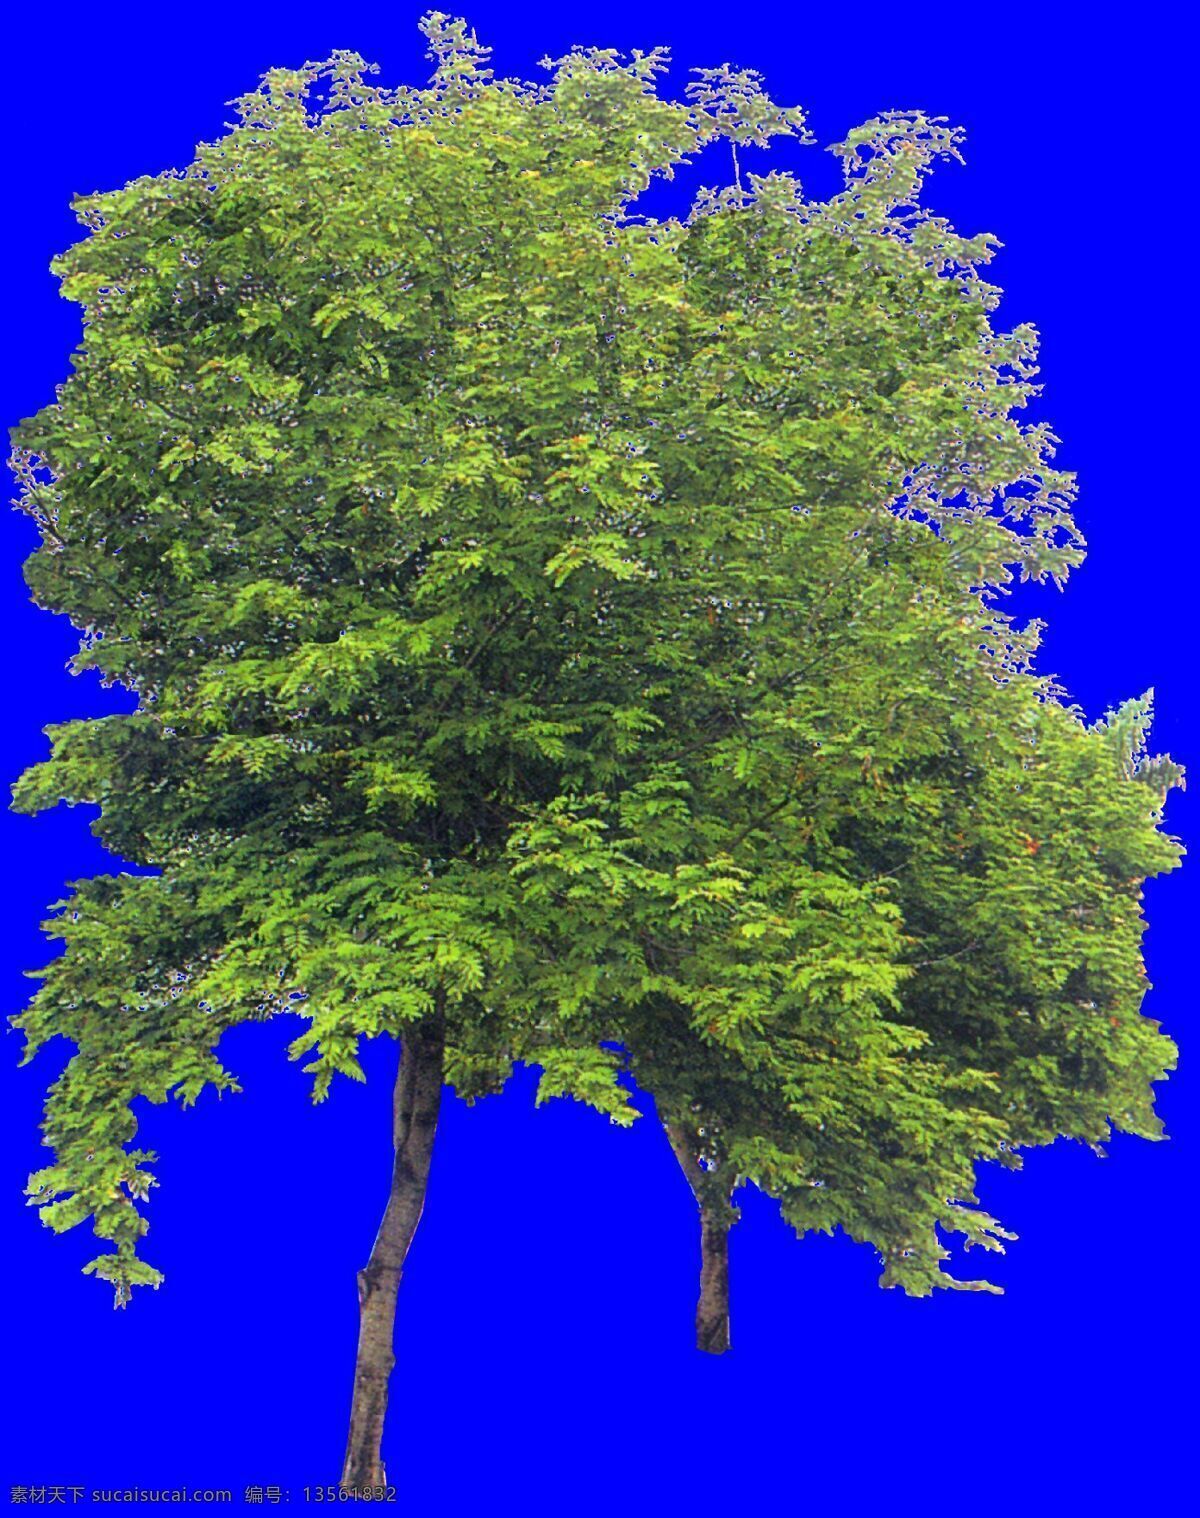 树丛 贴图素材 建筑装饰 设计素材 植物 蓝色